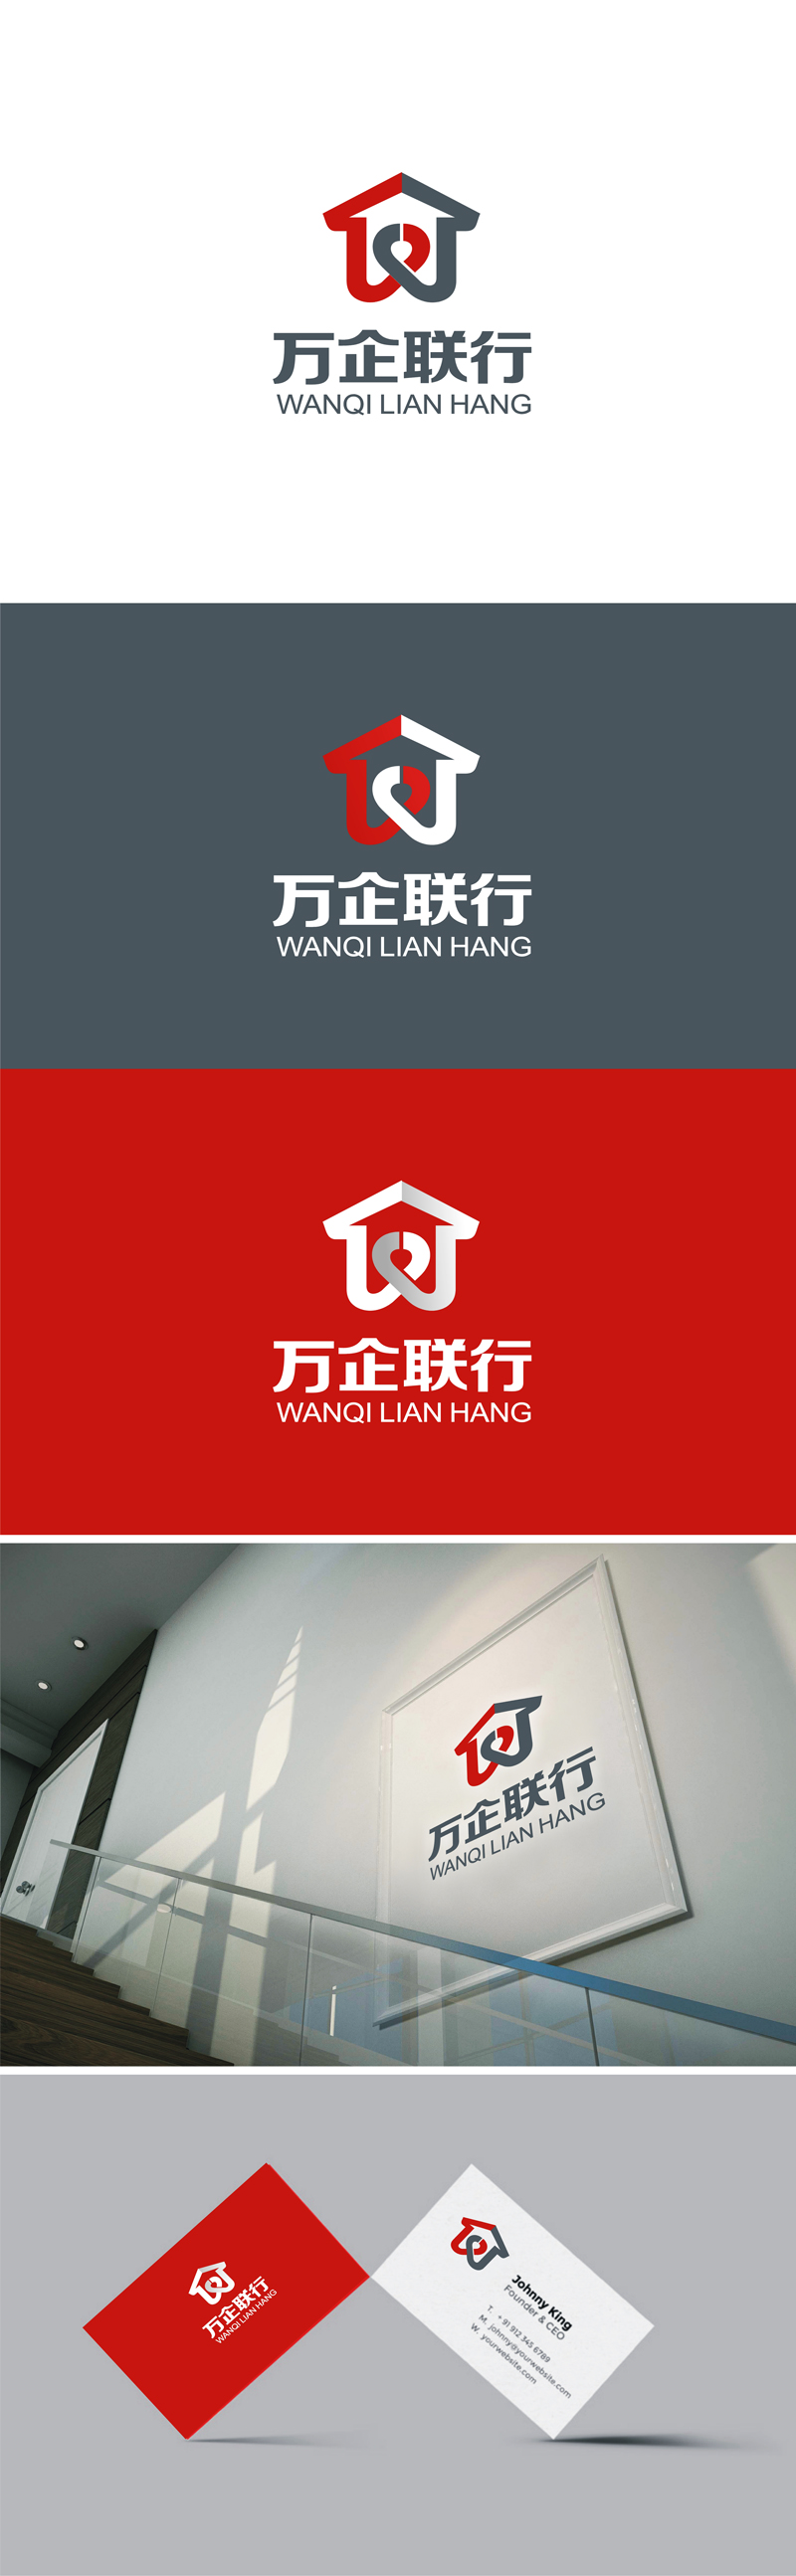 郑国麟的万企联行物业服务有限公司logo设计